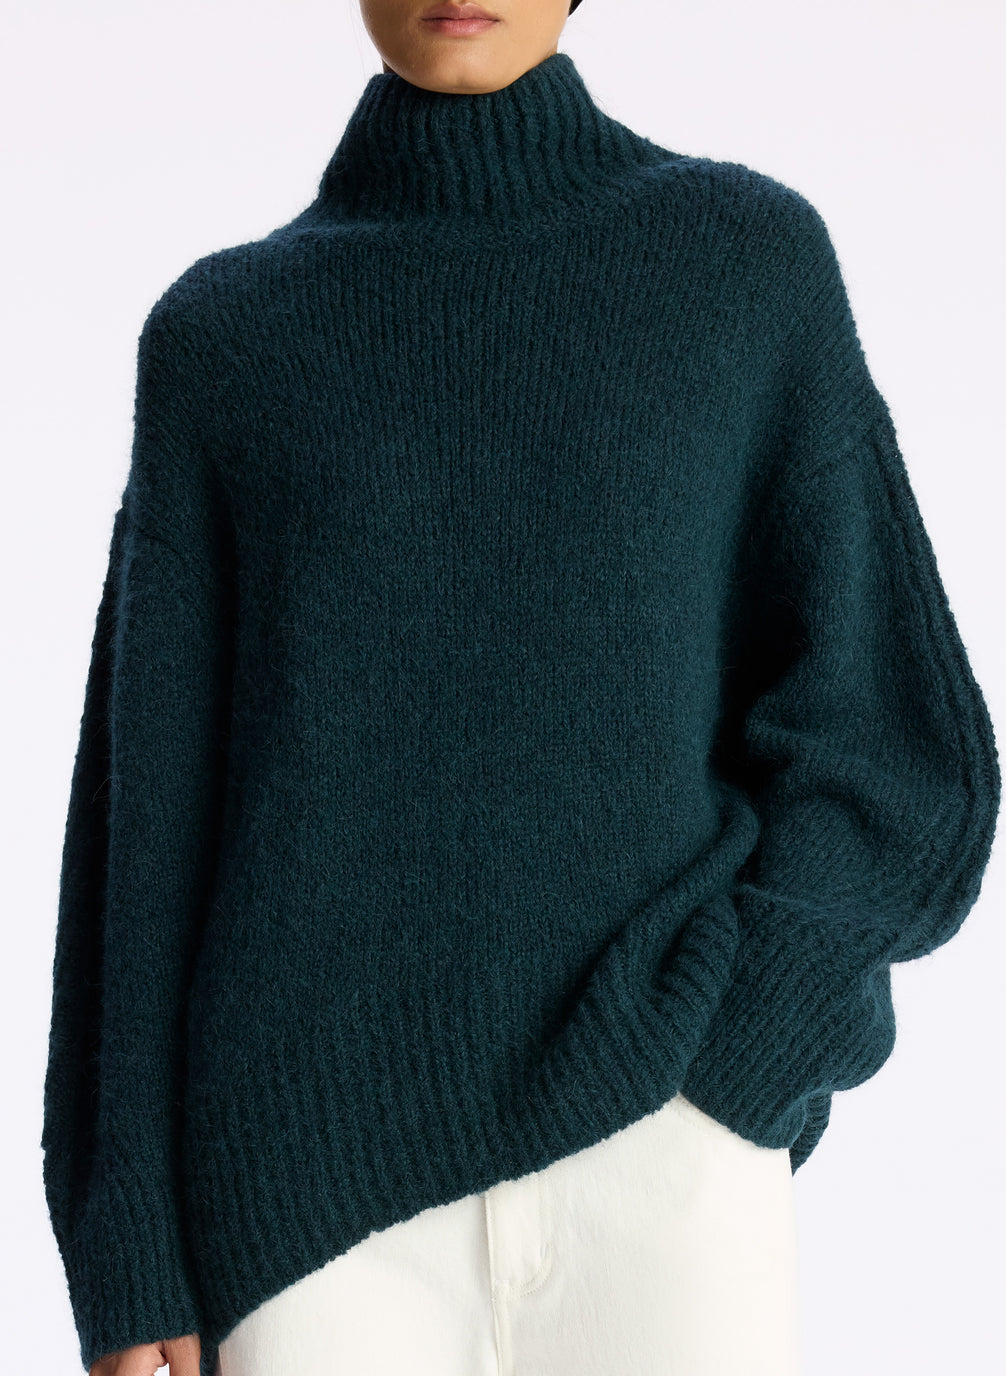 Nelson Wool Turtleneck Sweater